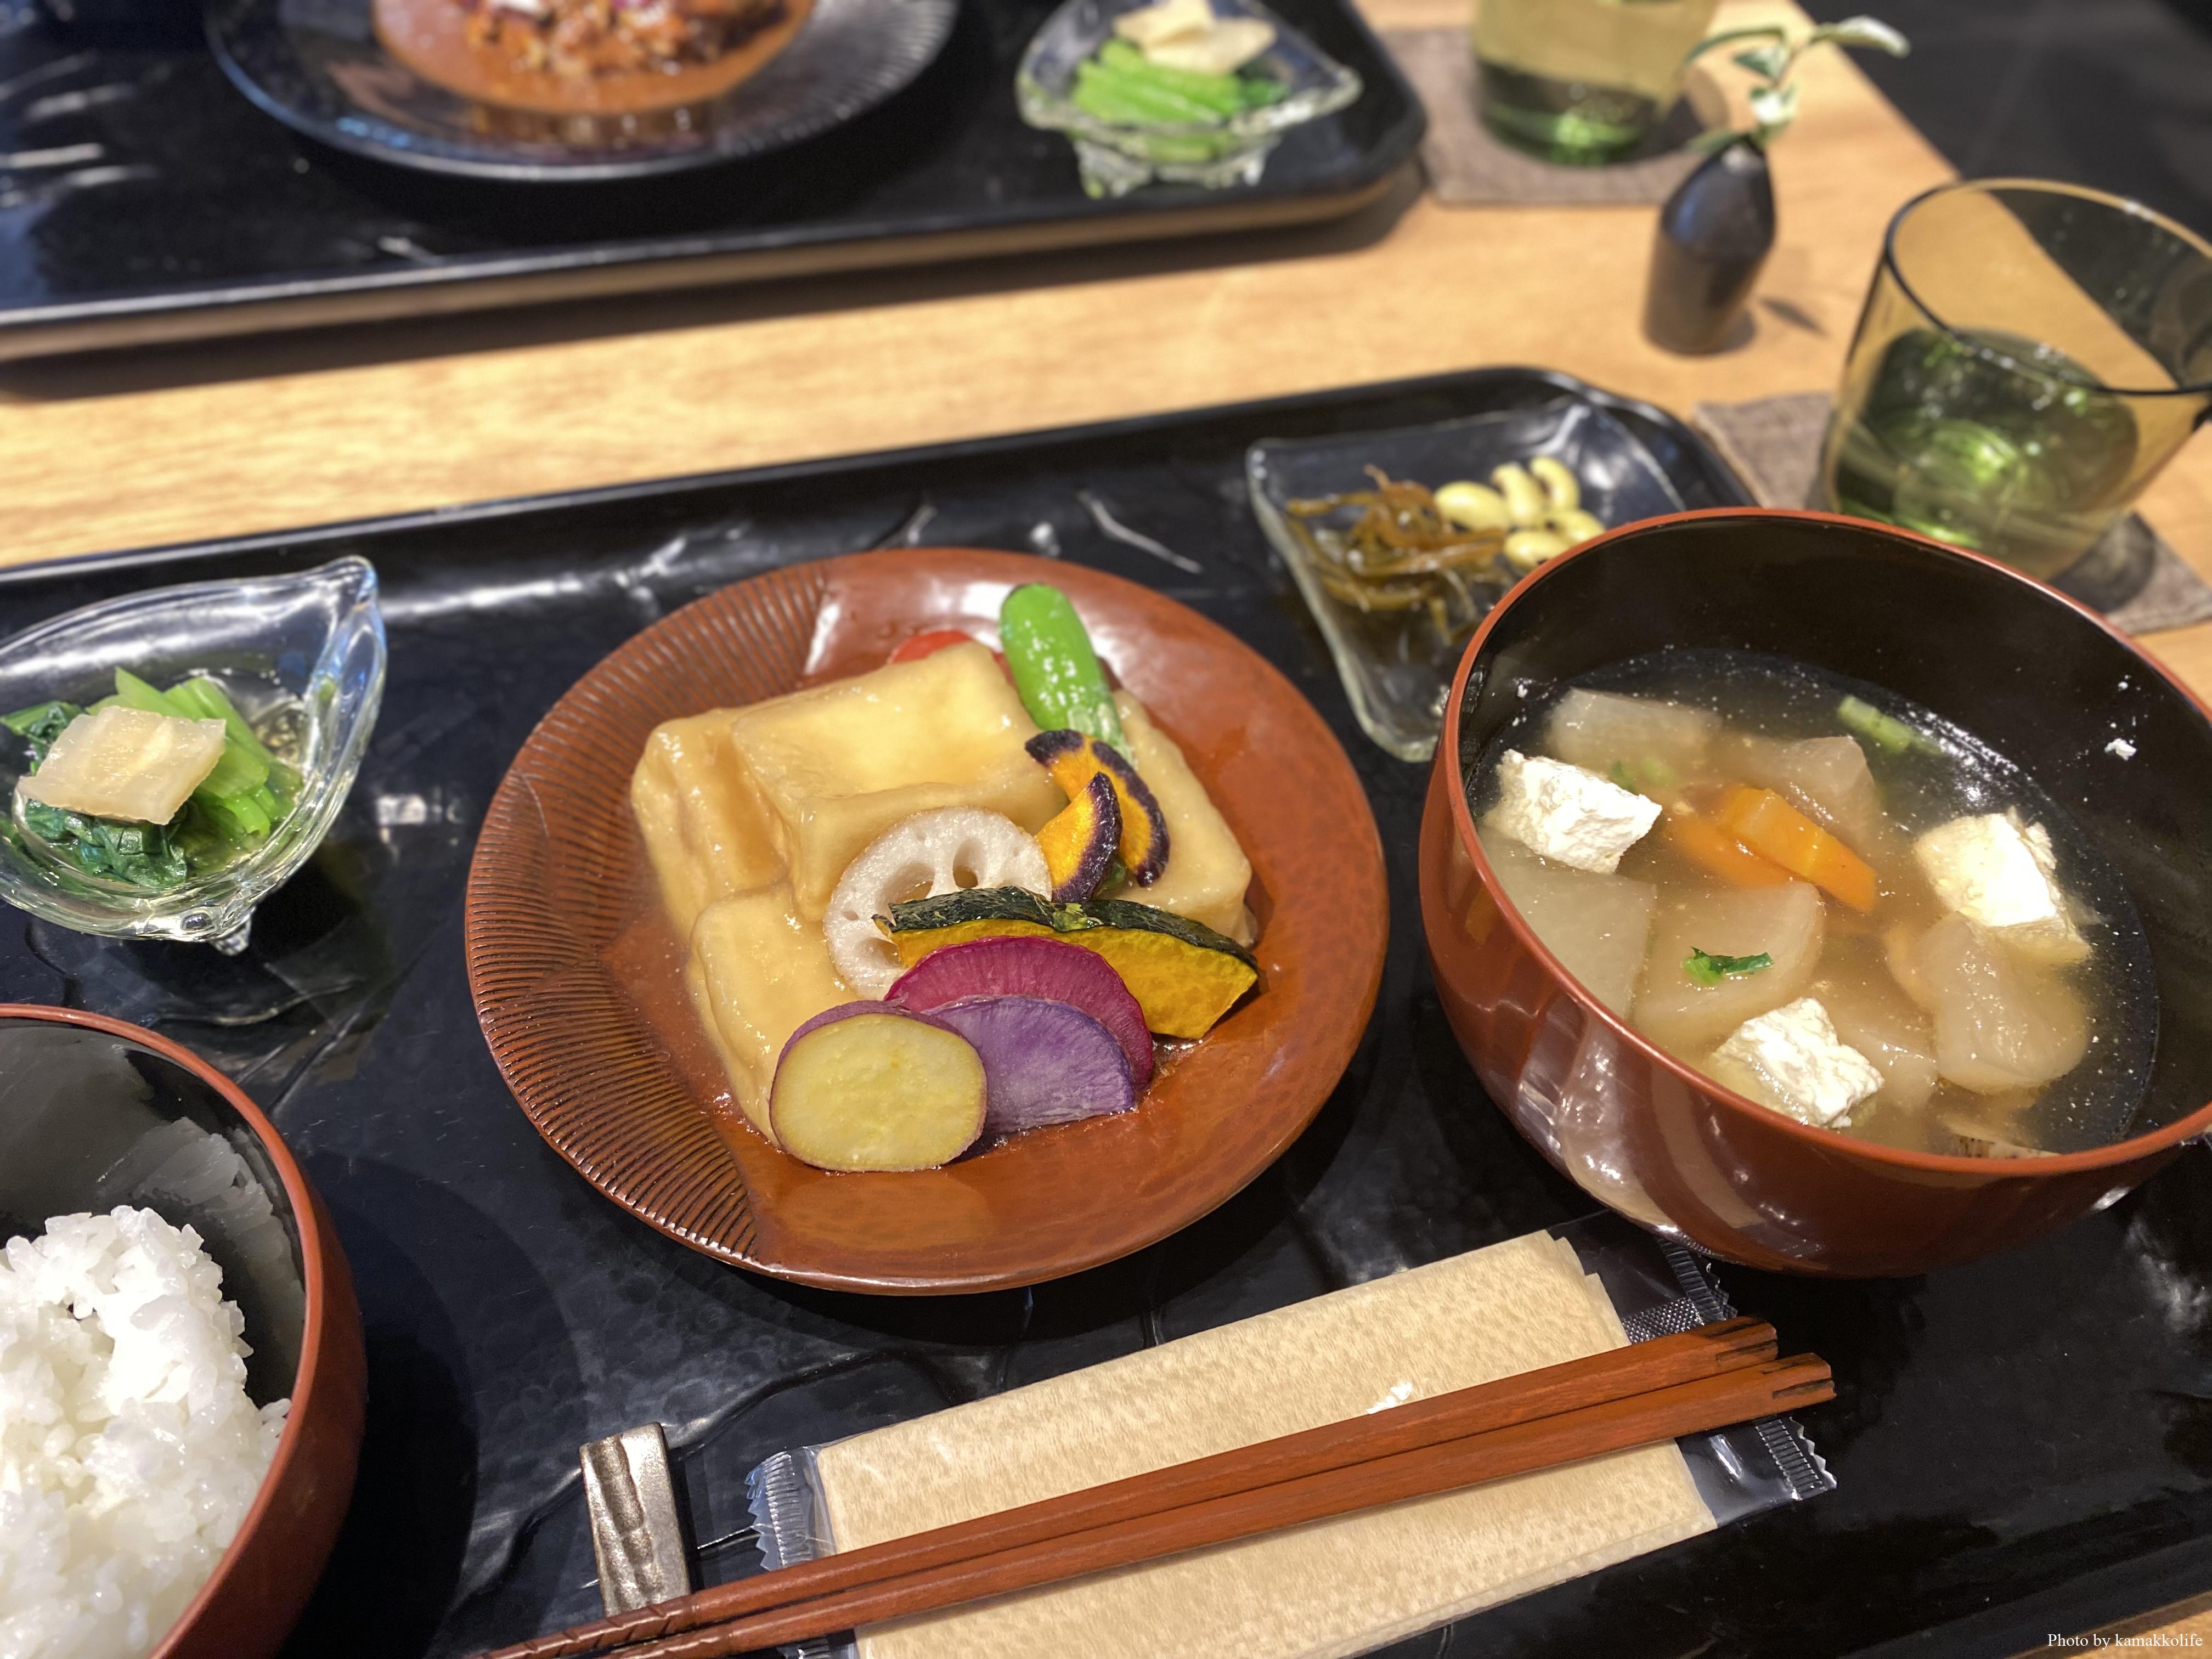 鎌倉ランチ 鎌倉彫の器でいただく絶品和食ランチ カフェ 倶利 鎌っこらいふ